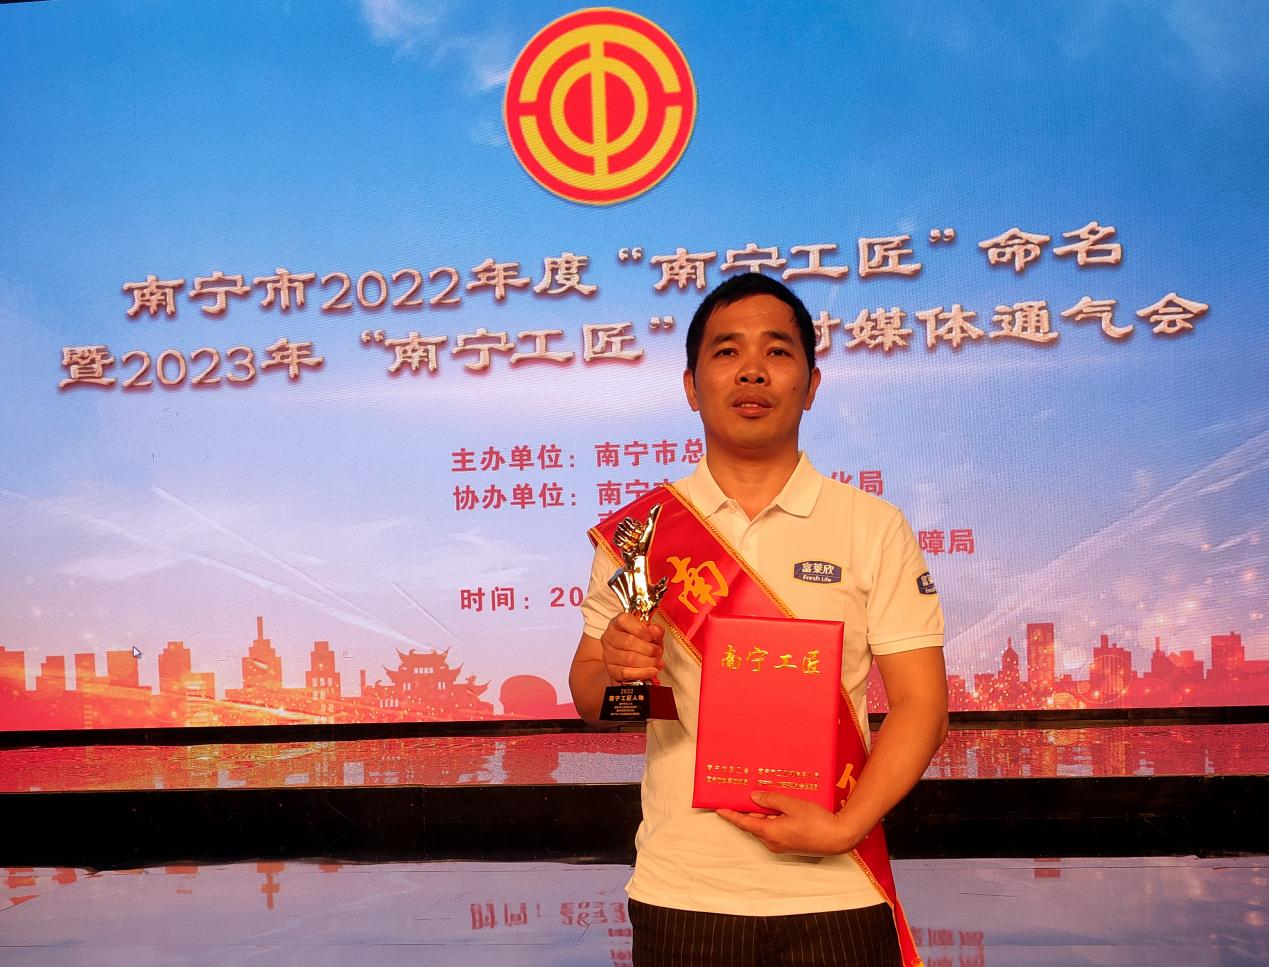 热烈祝贺富莱欣蒙侦敏工程师荣膺2022年度“南宁工匠”称号